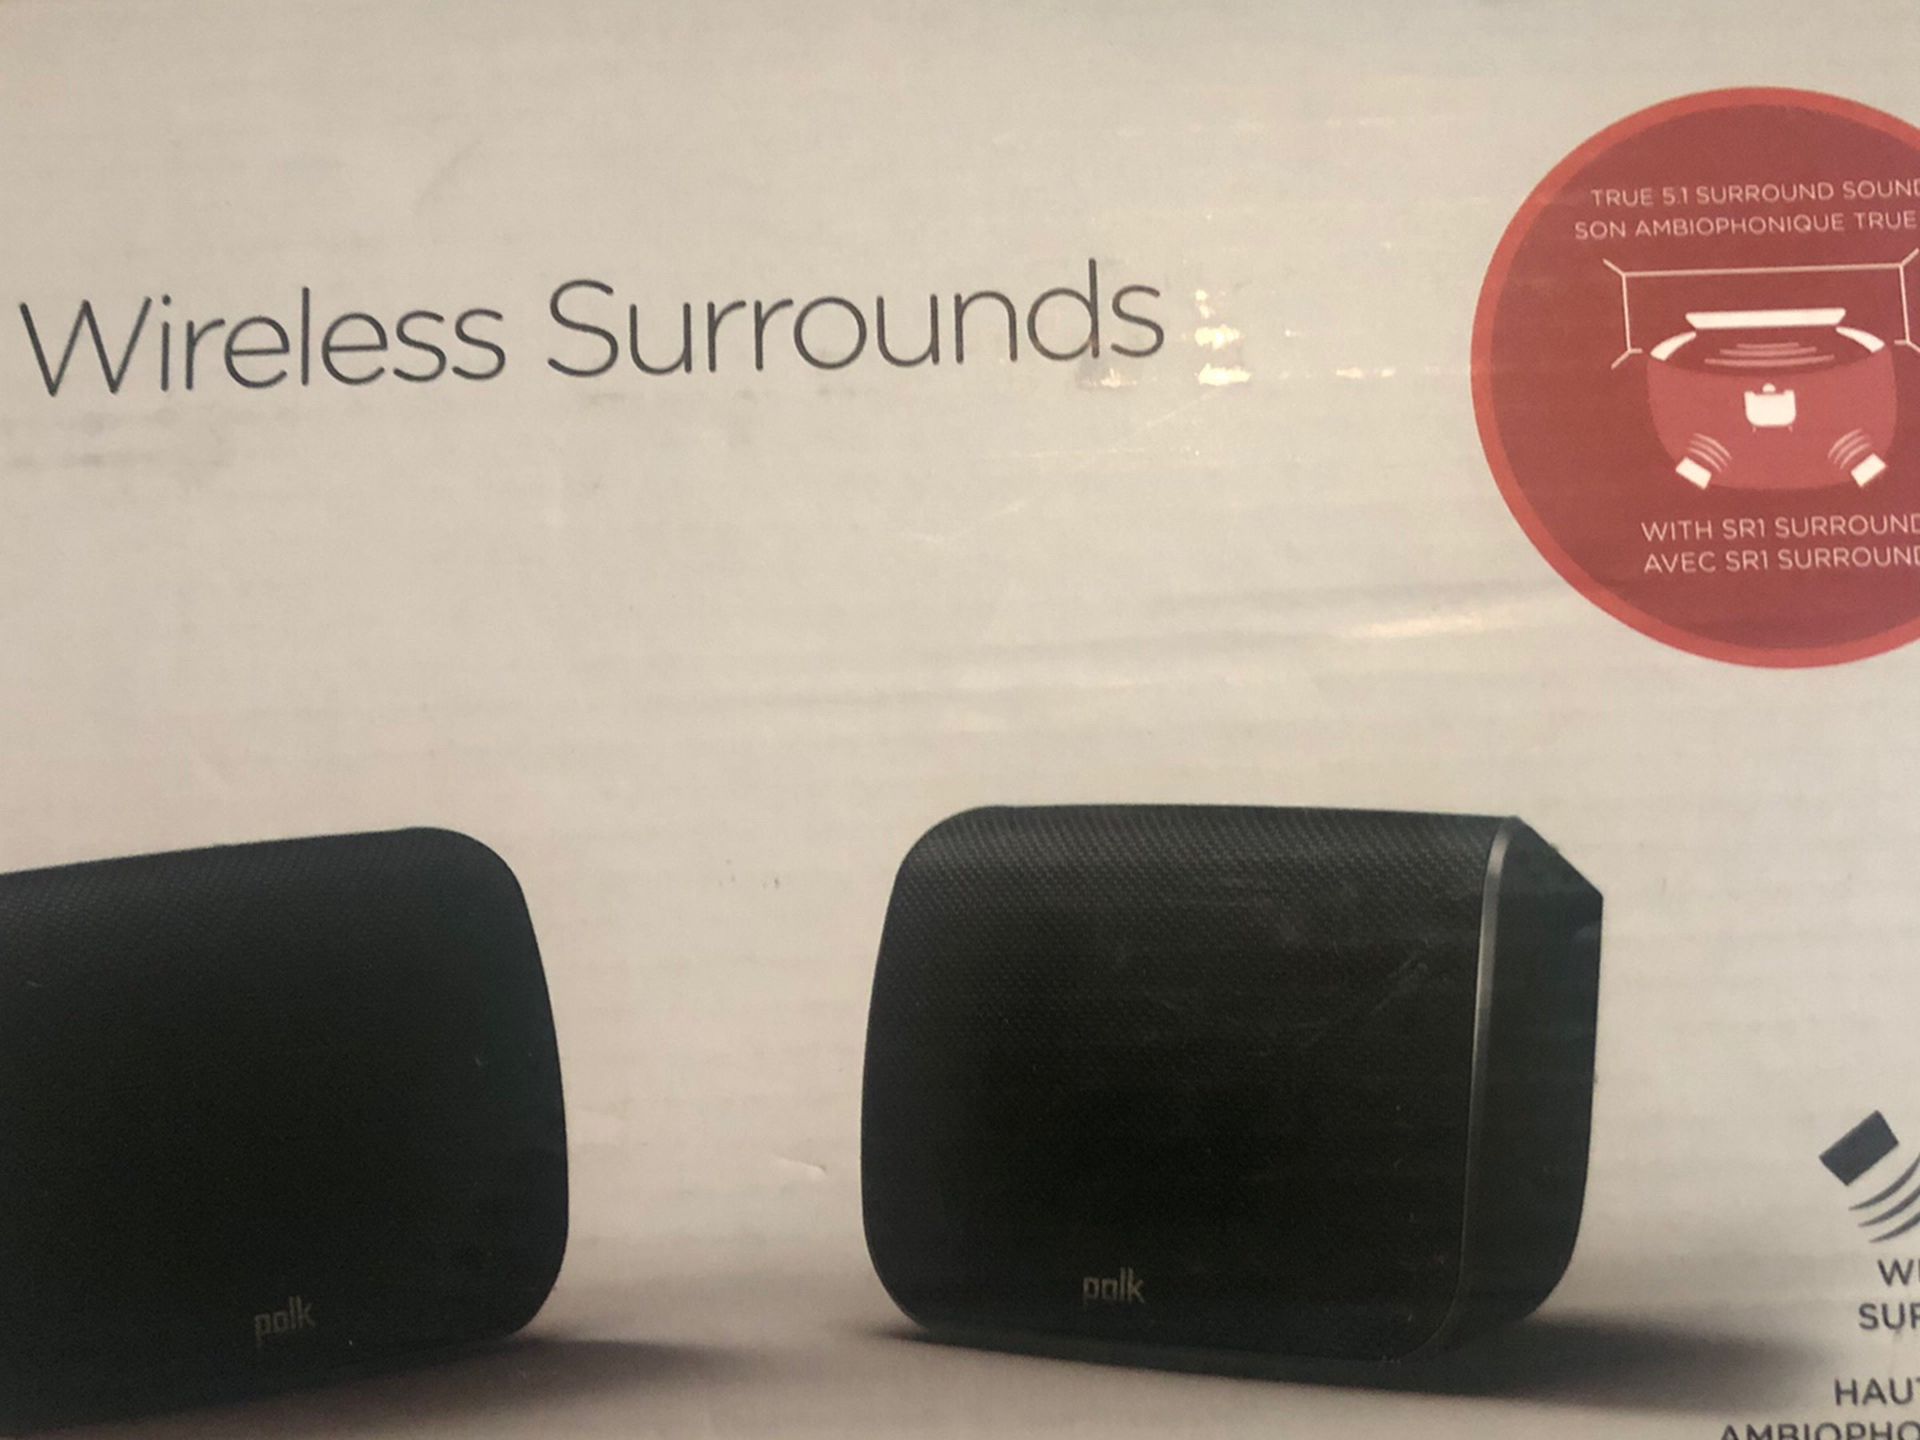 Polk Brand Speakers Surround Sound